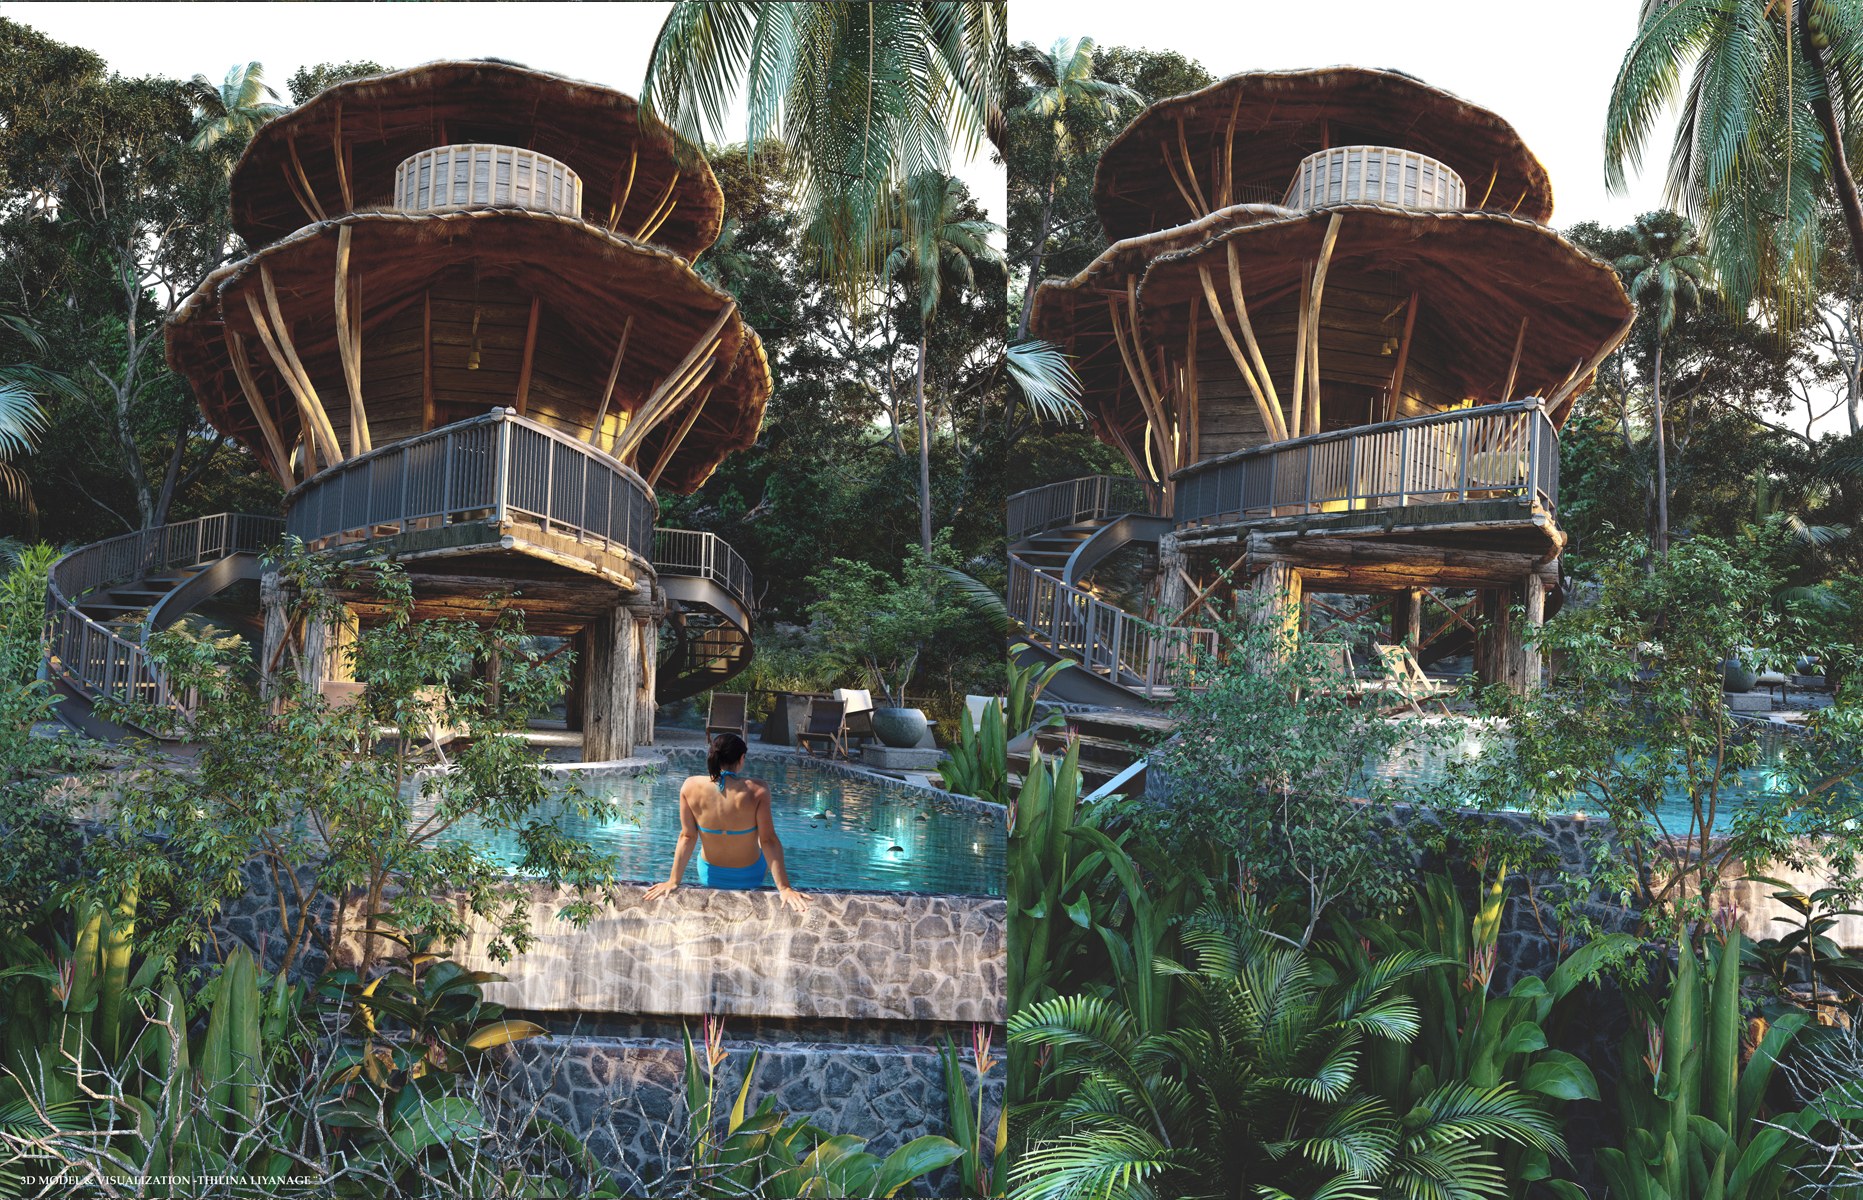 Bali Vila Design & Visualization by Thilina Liyanage